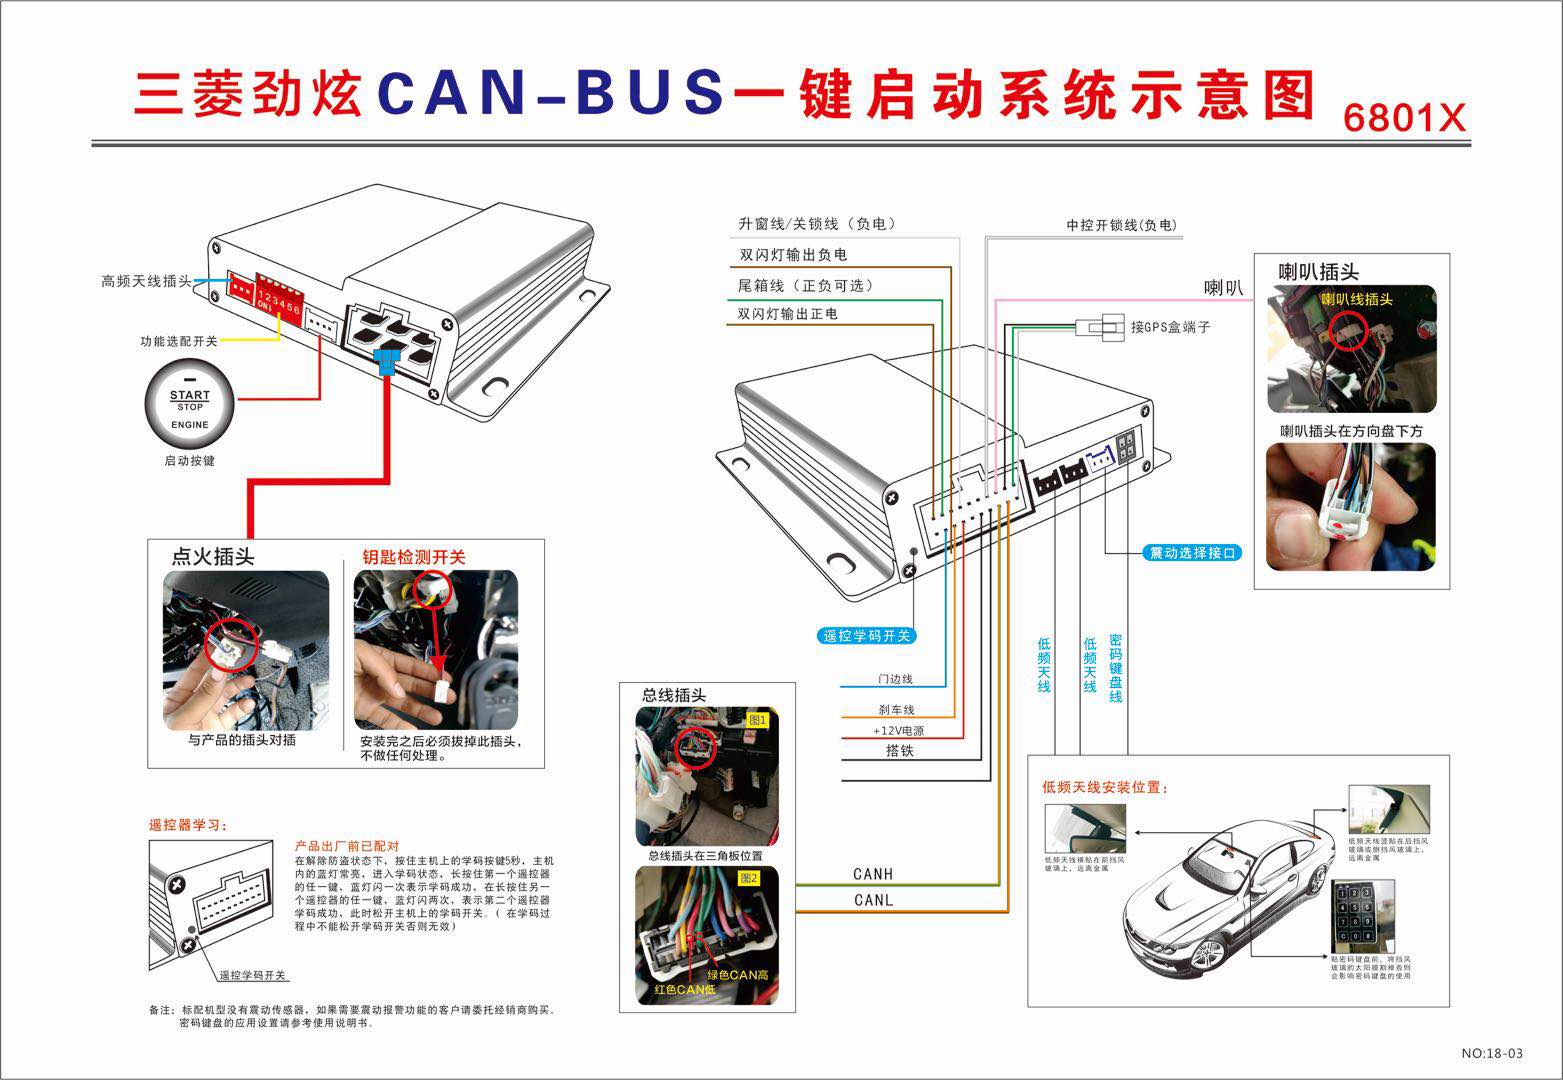 三菱劲炫CAN-BUS一键启动系统示意图